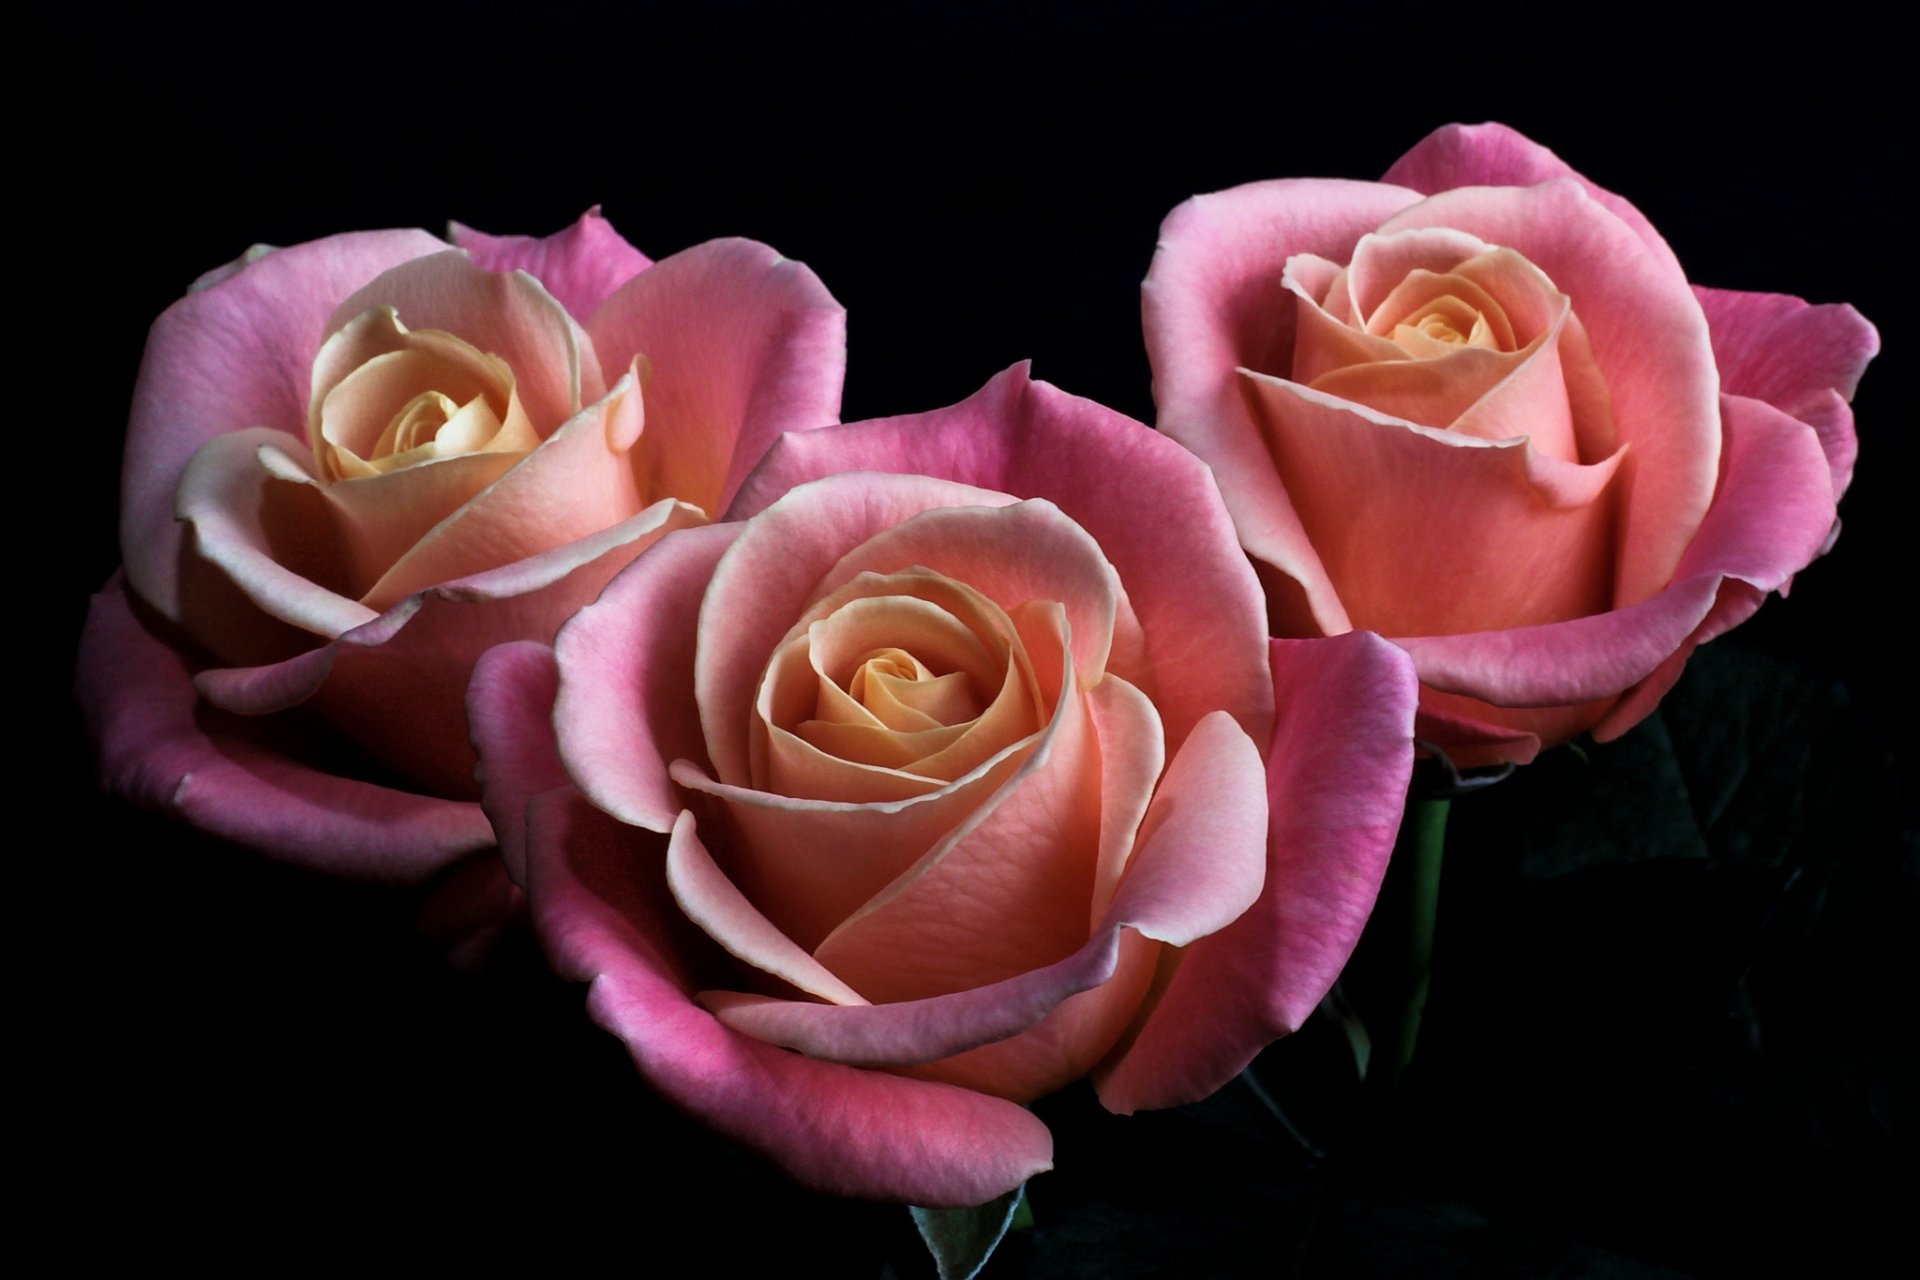 roses flower pink buds petals black background